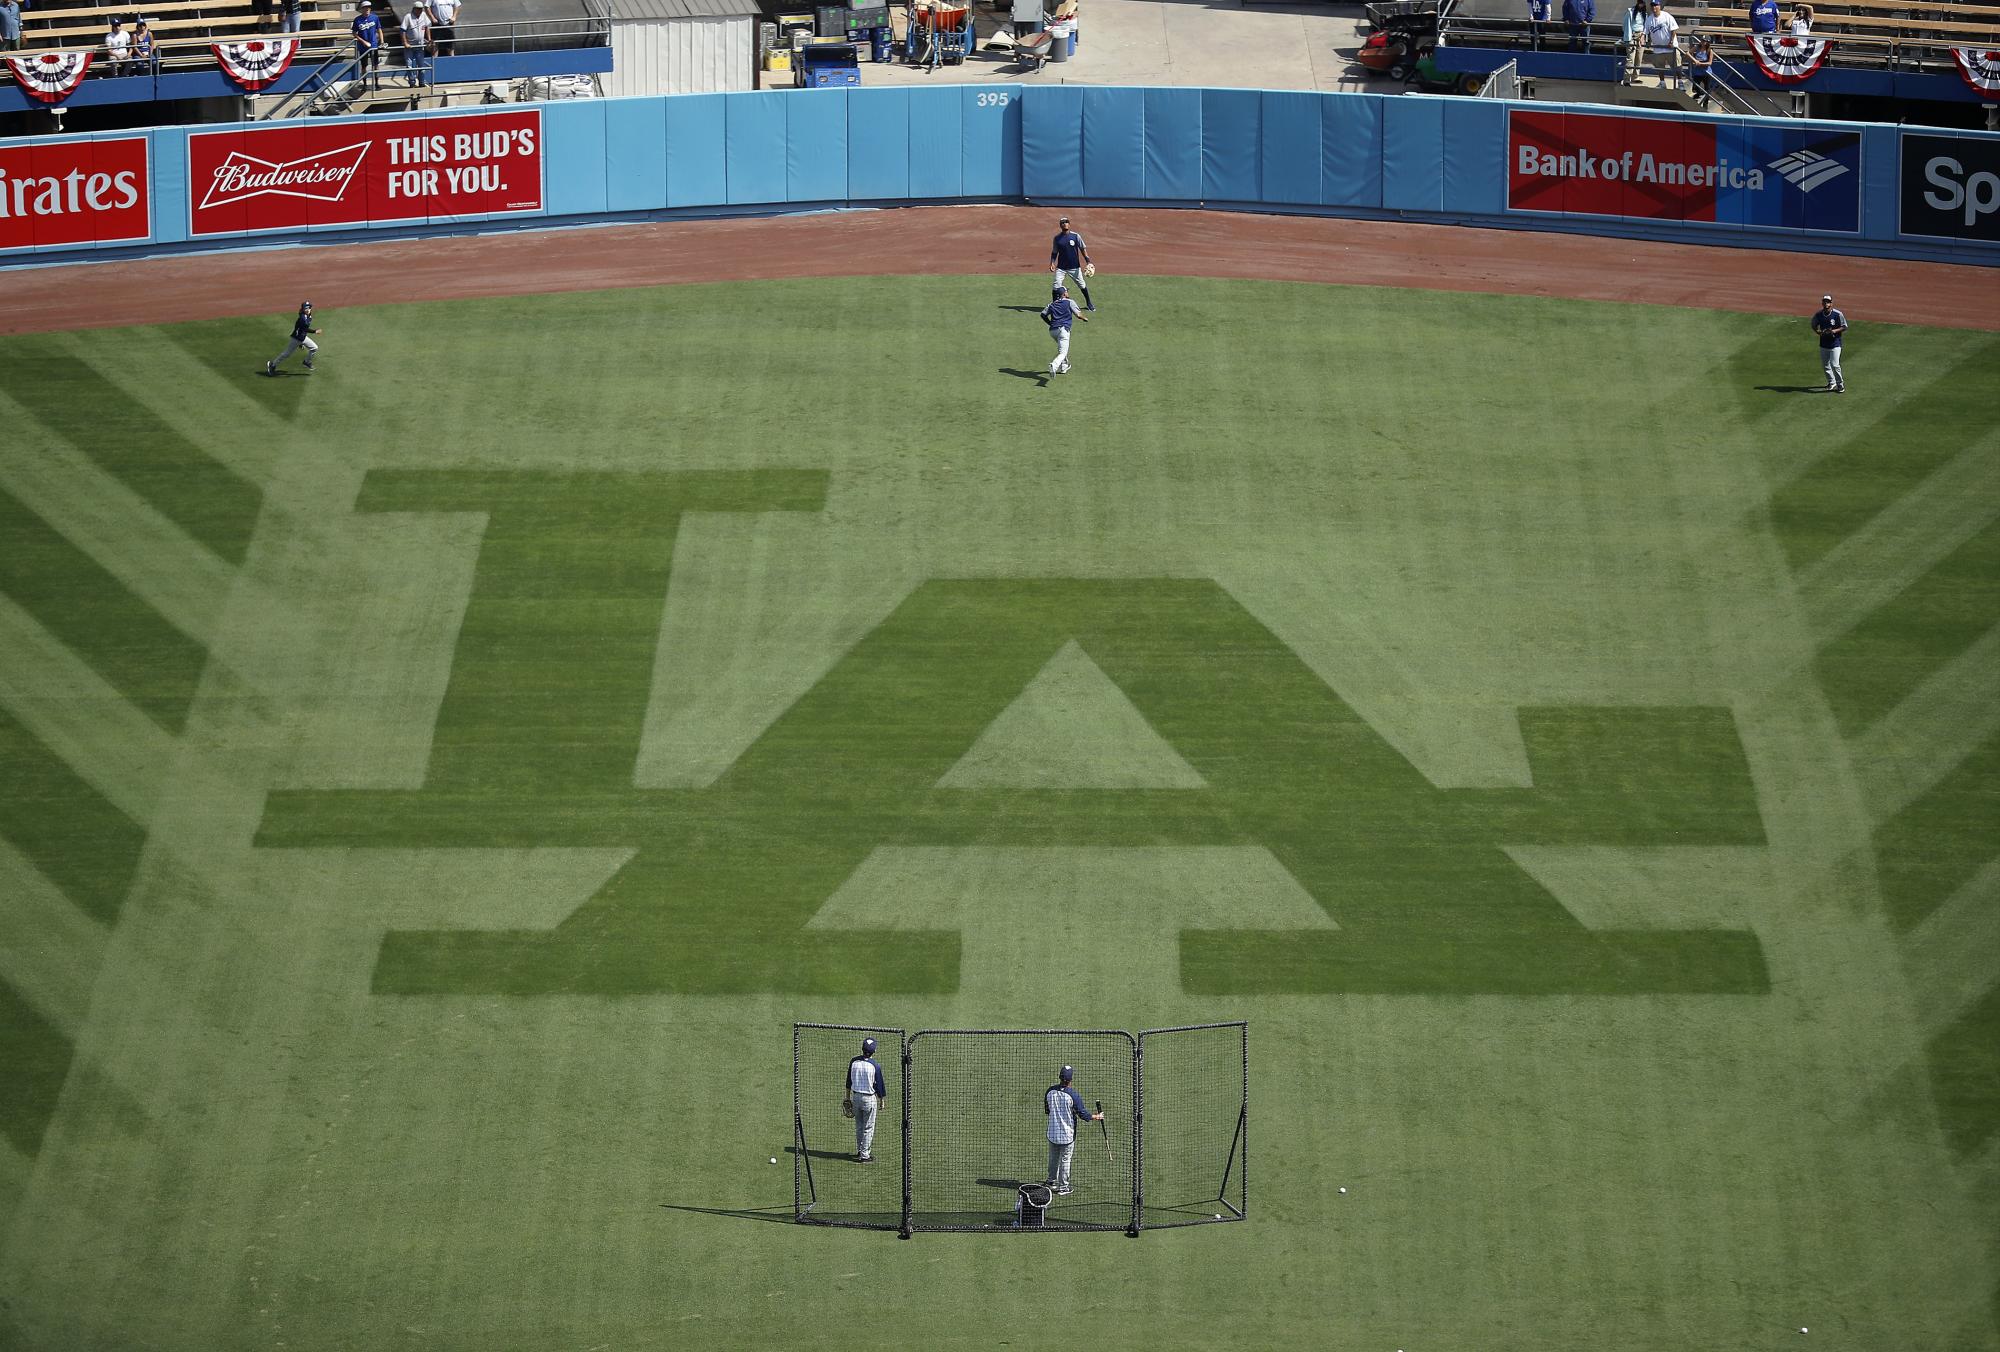 Integrantes de los Padres de San Diego calientan previo al partido ante los Dodgers de Los Ángeles, el pasado domingo 3 de abril, en Los Ángeles. 